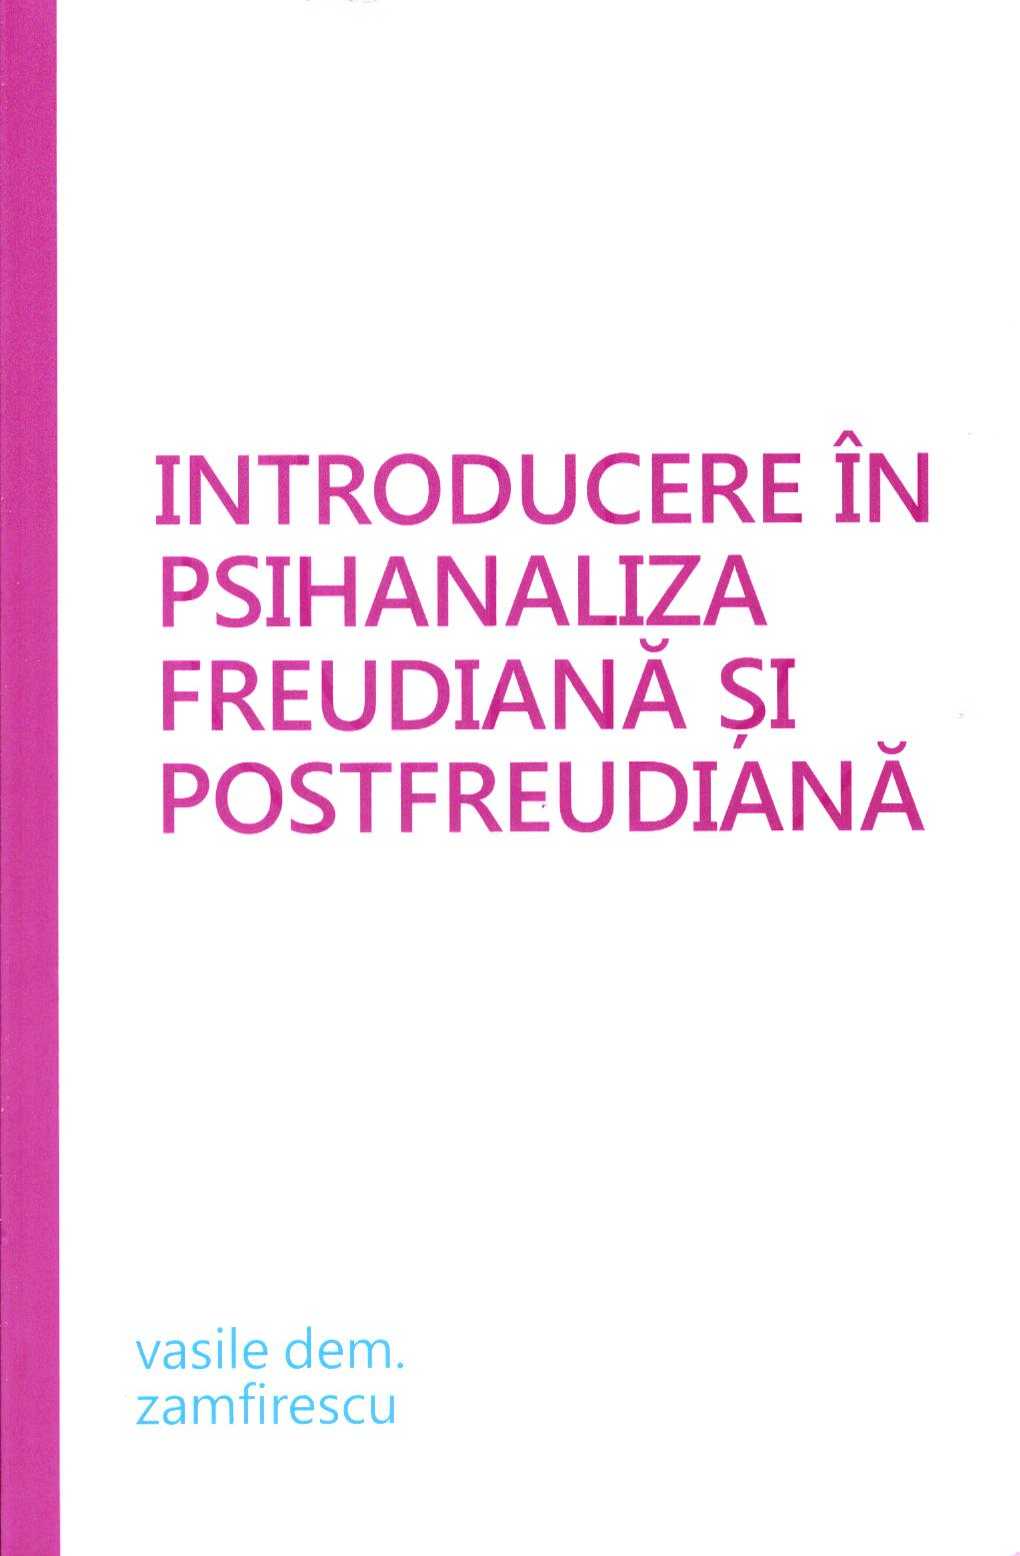 Introducere in psihanaliza freudiana si postfreudiana - Vasile Dem. Zamfirescu